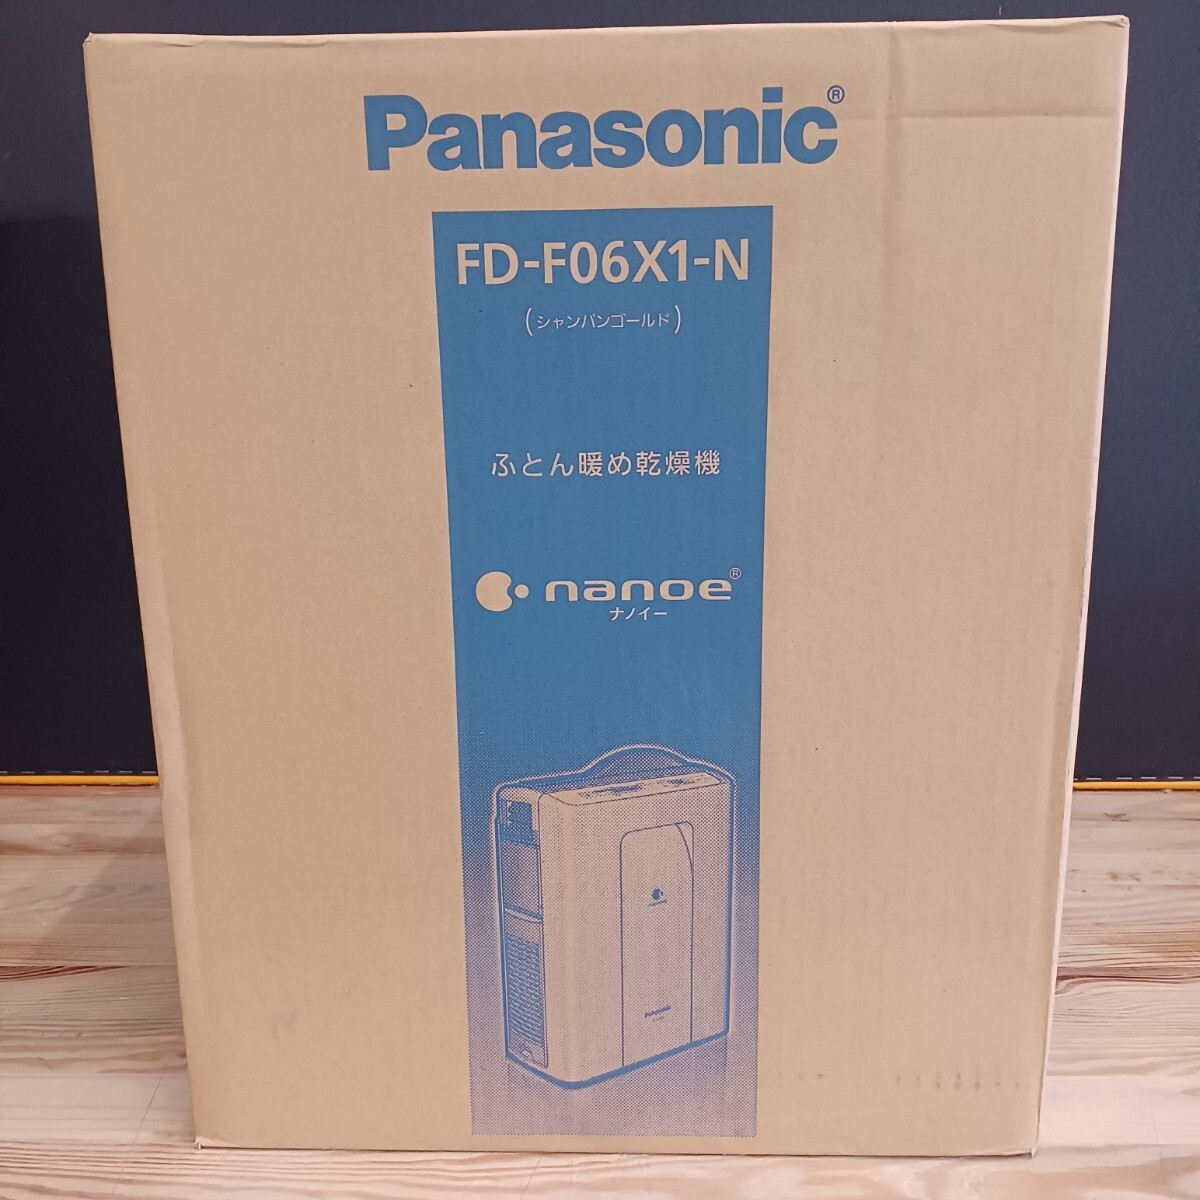 Panasonic Panasonic futon .. сушильная машина FD-F06X1-N( золотистый, цвет шампанского ) не использовался хранение товар 